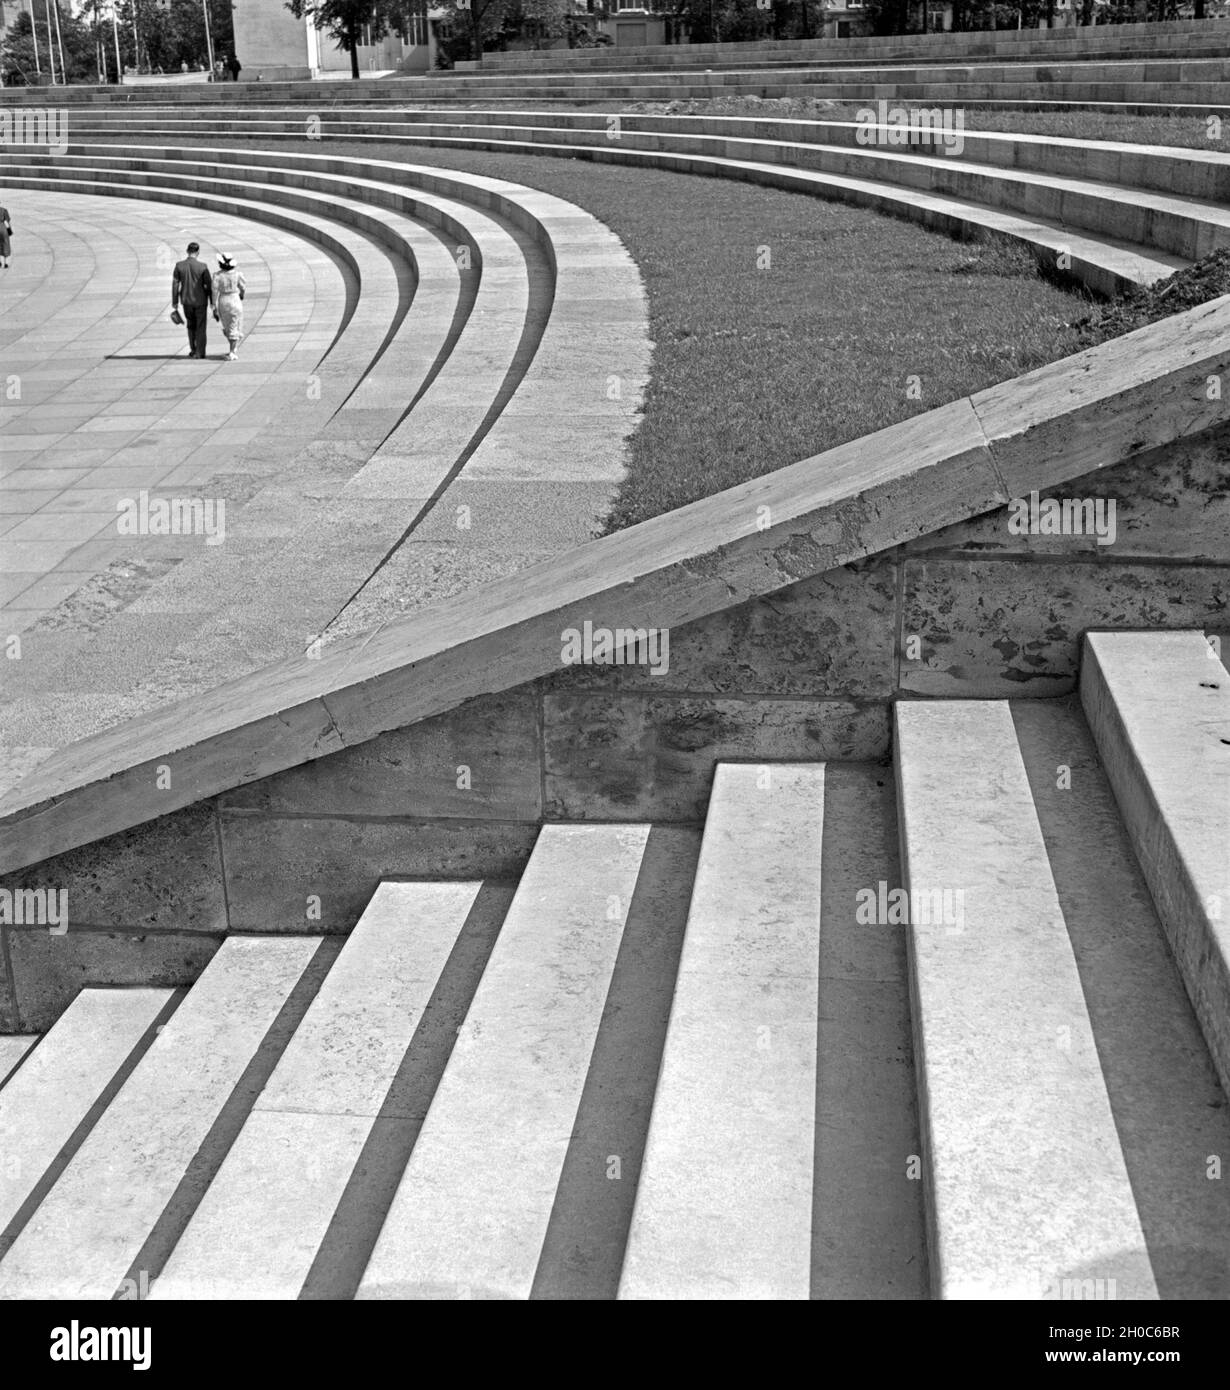 Ein Paar spaziert vor den Rängen des Reichsparteitagsgeländes in Nürnberg, Deutschland 1930er Jahre. A couple strollin at the seats of the Reichsparteitagsgelände at Nuremberg, Germany 1930s. Stock Photo